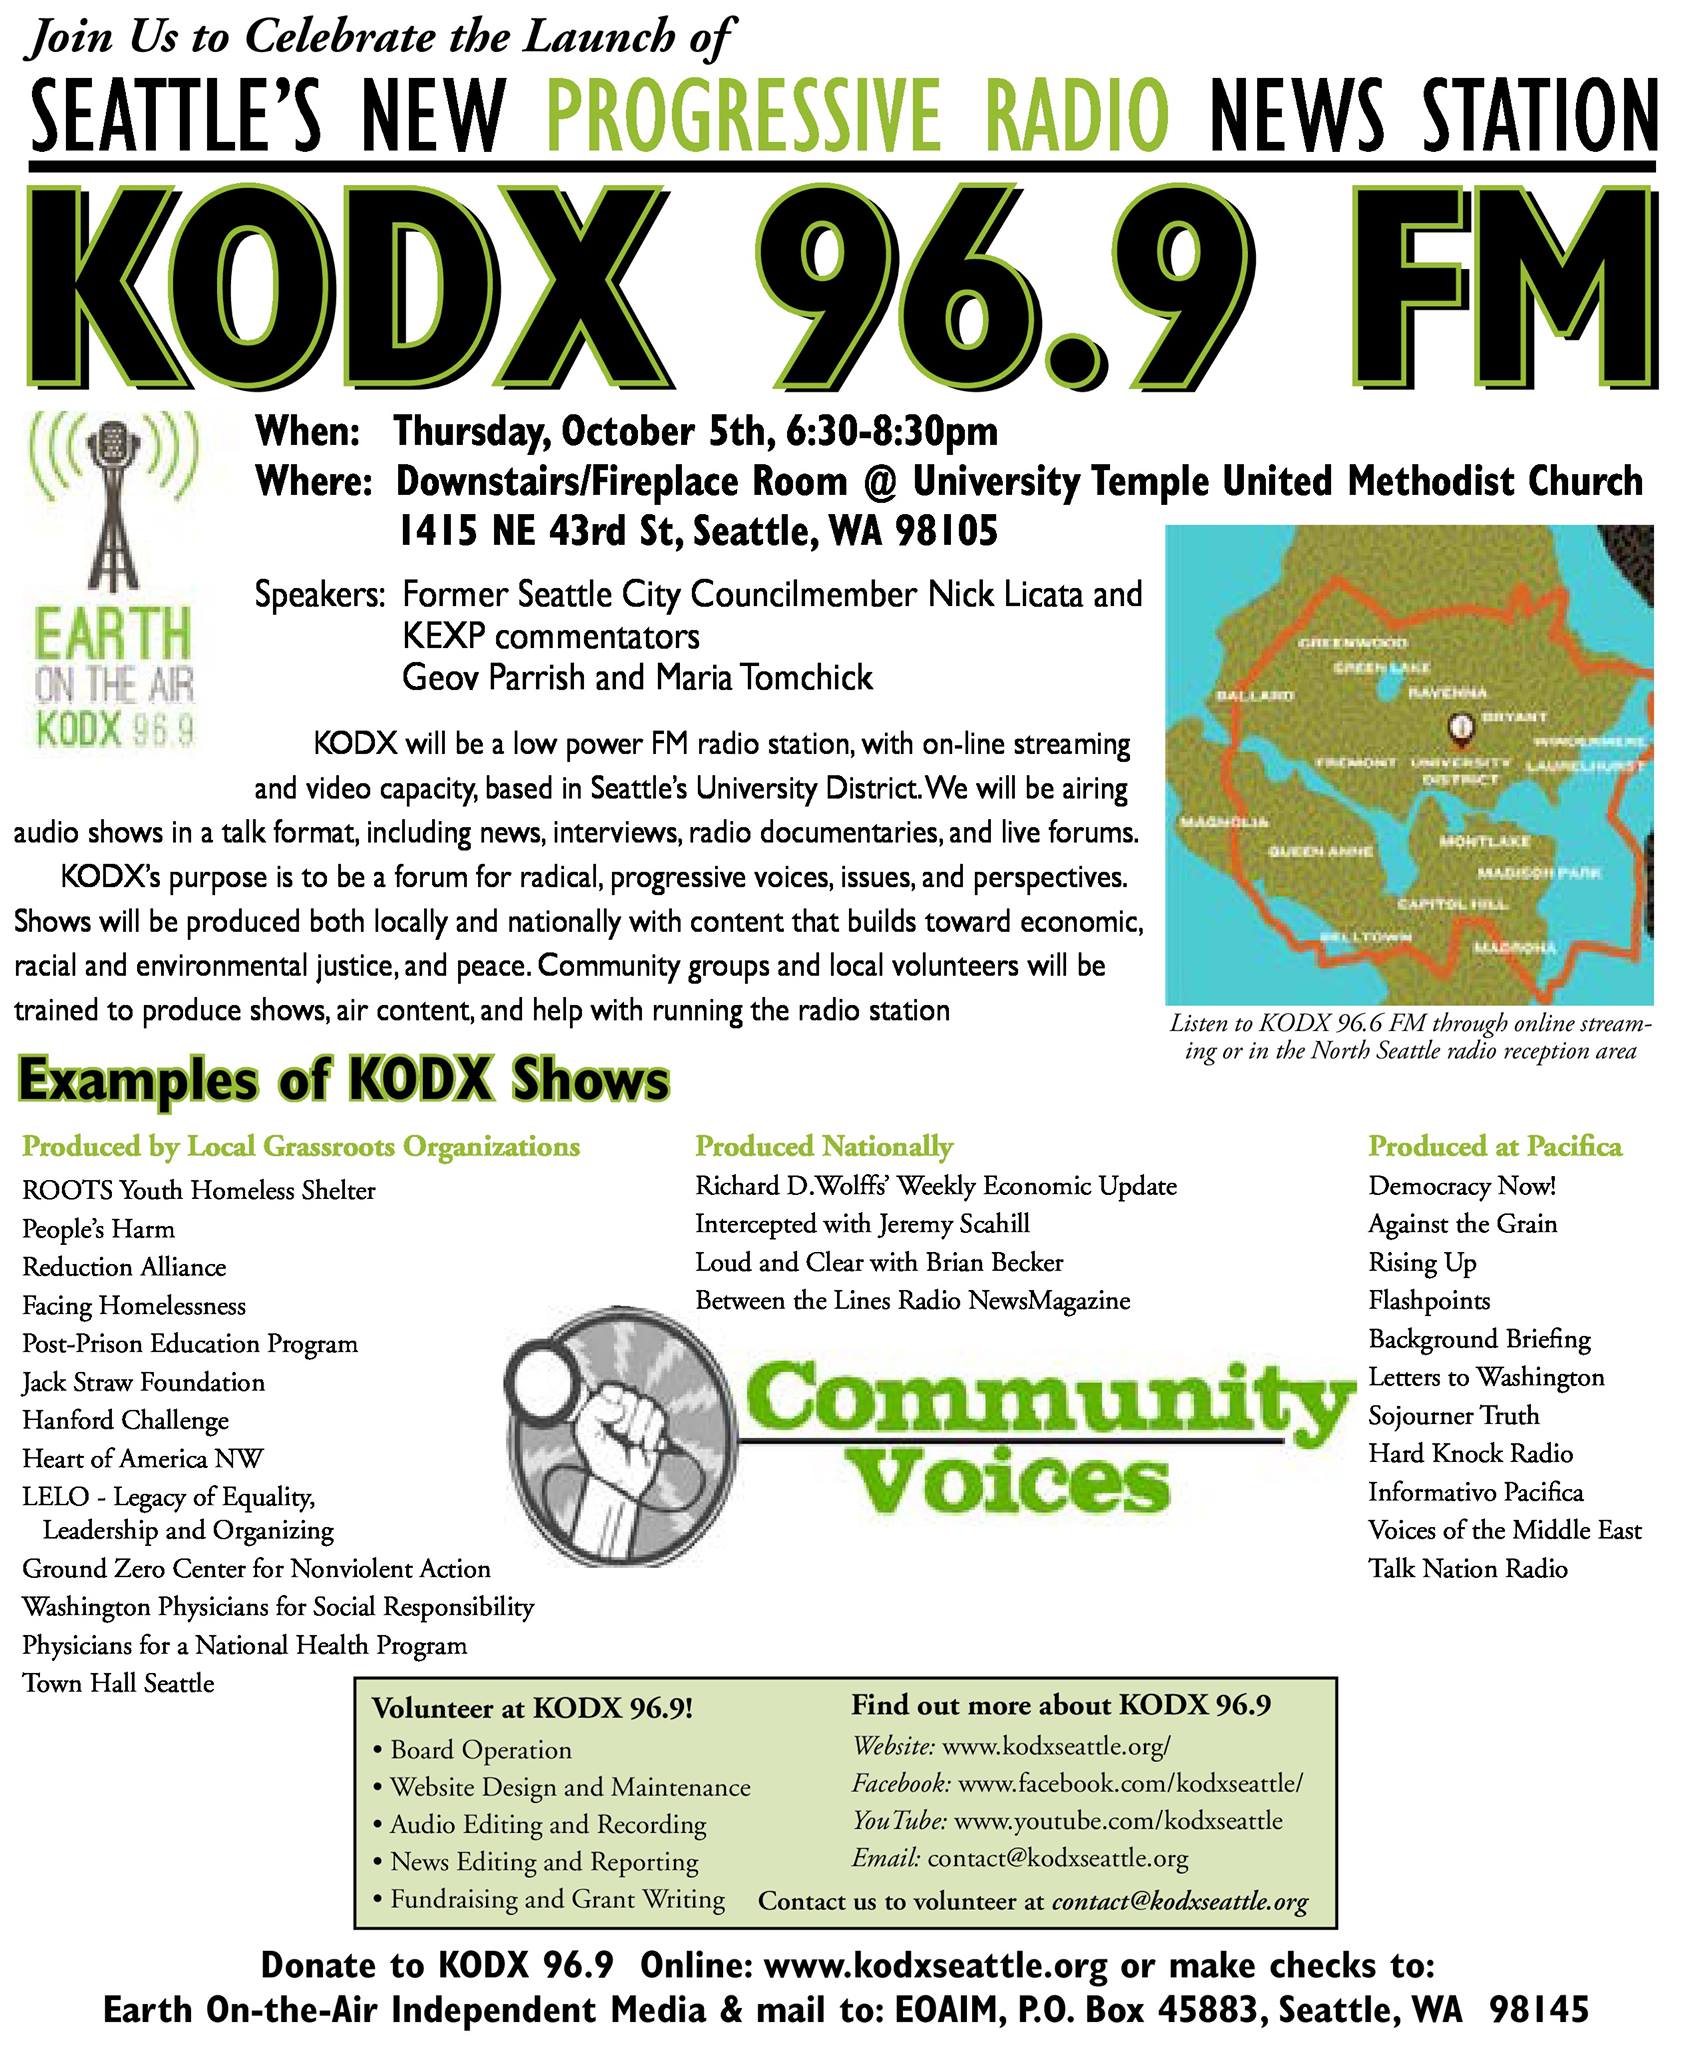 Launch party invitation for KODX-LP FM